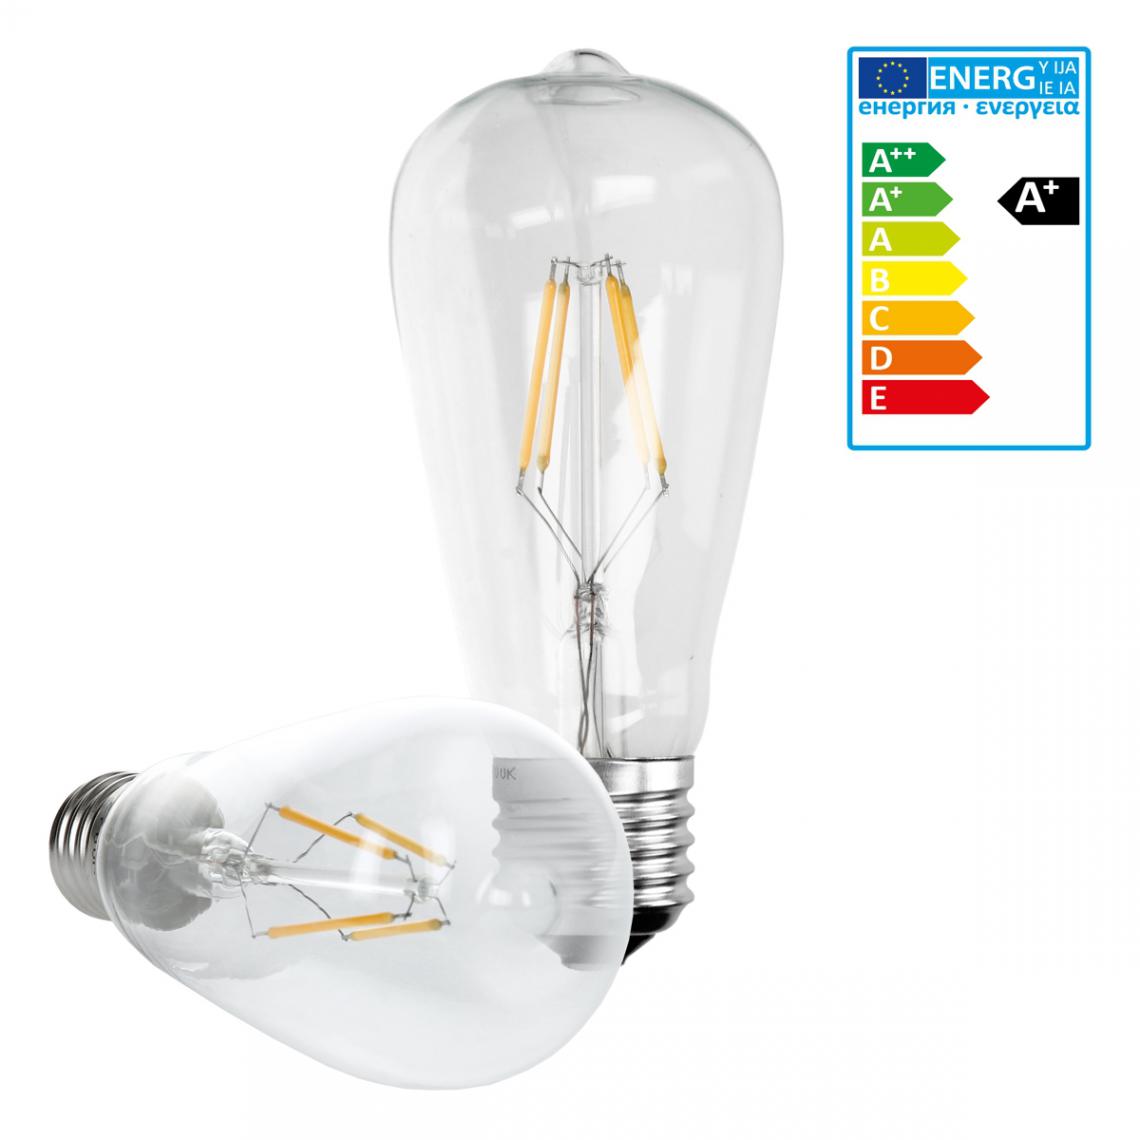 Ecd Germany - ECD Germany 4 x LED Filament de l'ampoule E27 classique Edison 4W 408 lumens 120° Angle de faisceau AC 220-240 reste caché et remplace 20W Lampe incandescente Blanc Chaud - Ampoules LED